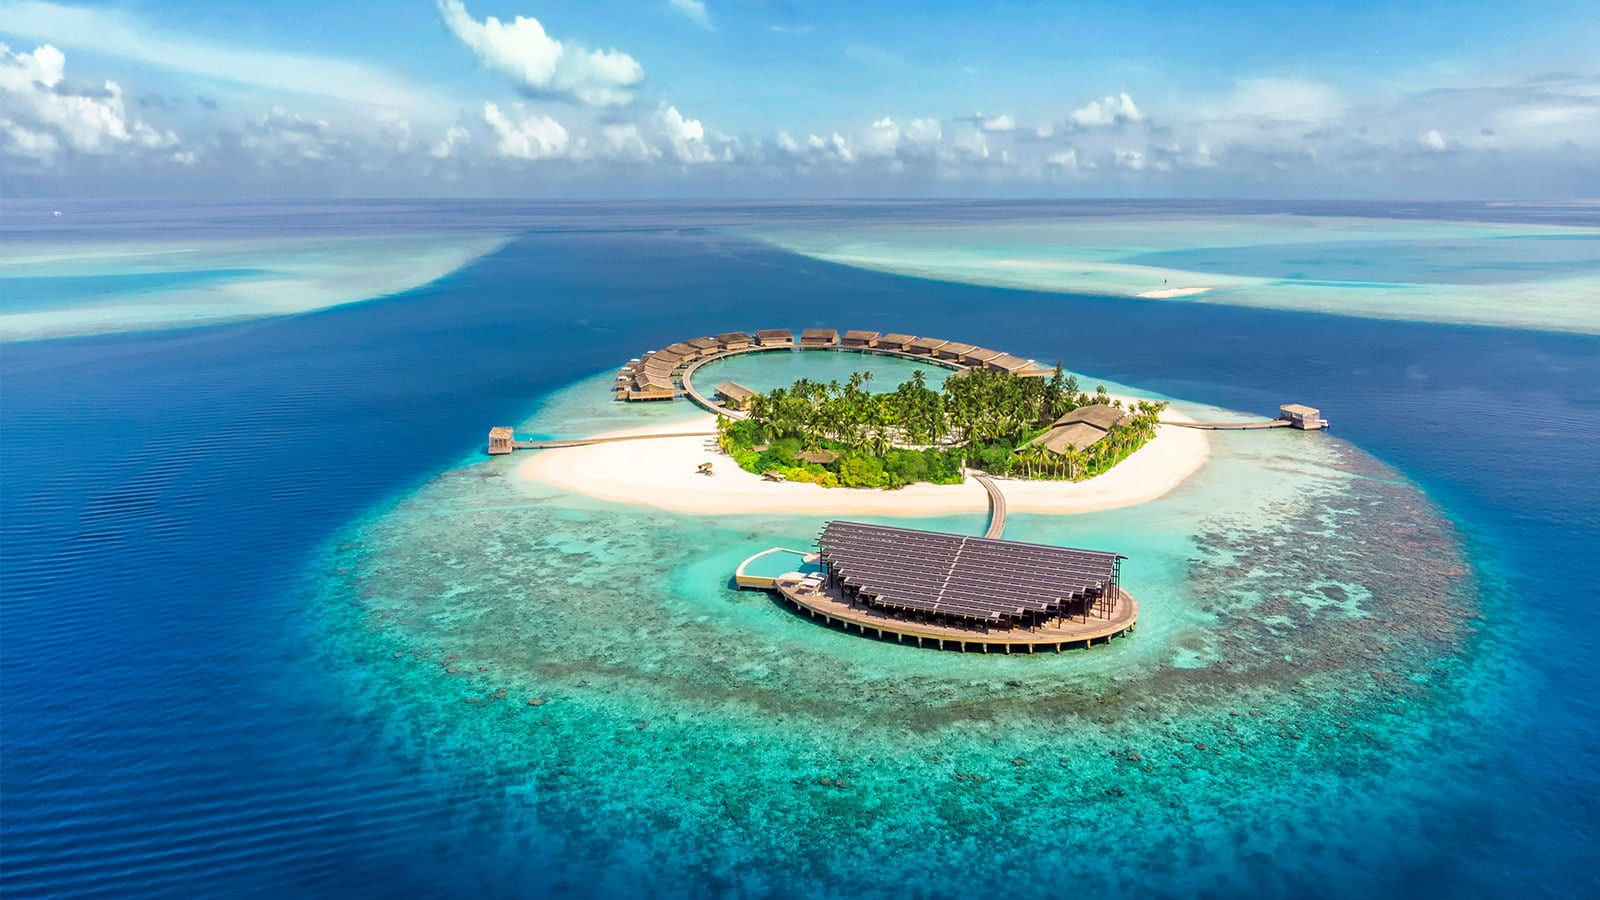 في أي قارة تقع جزر المالديف.. إجابة سؤال الحلقة 16 في مسابقة مهيب ورزان رمضان 2021 لربح 100 ألف جنيه 9